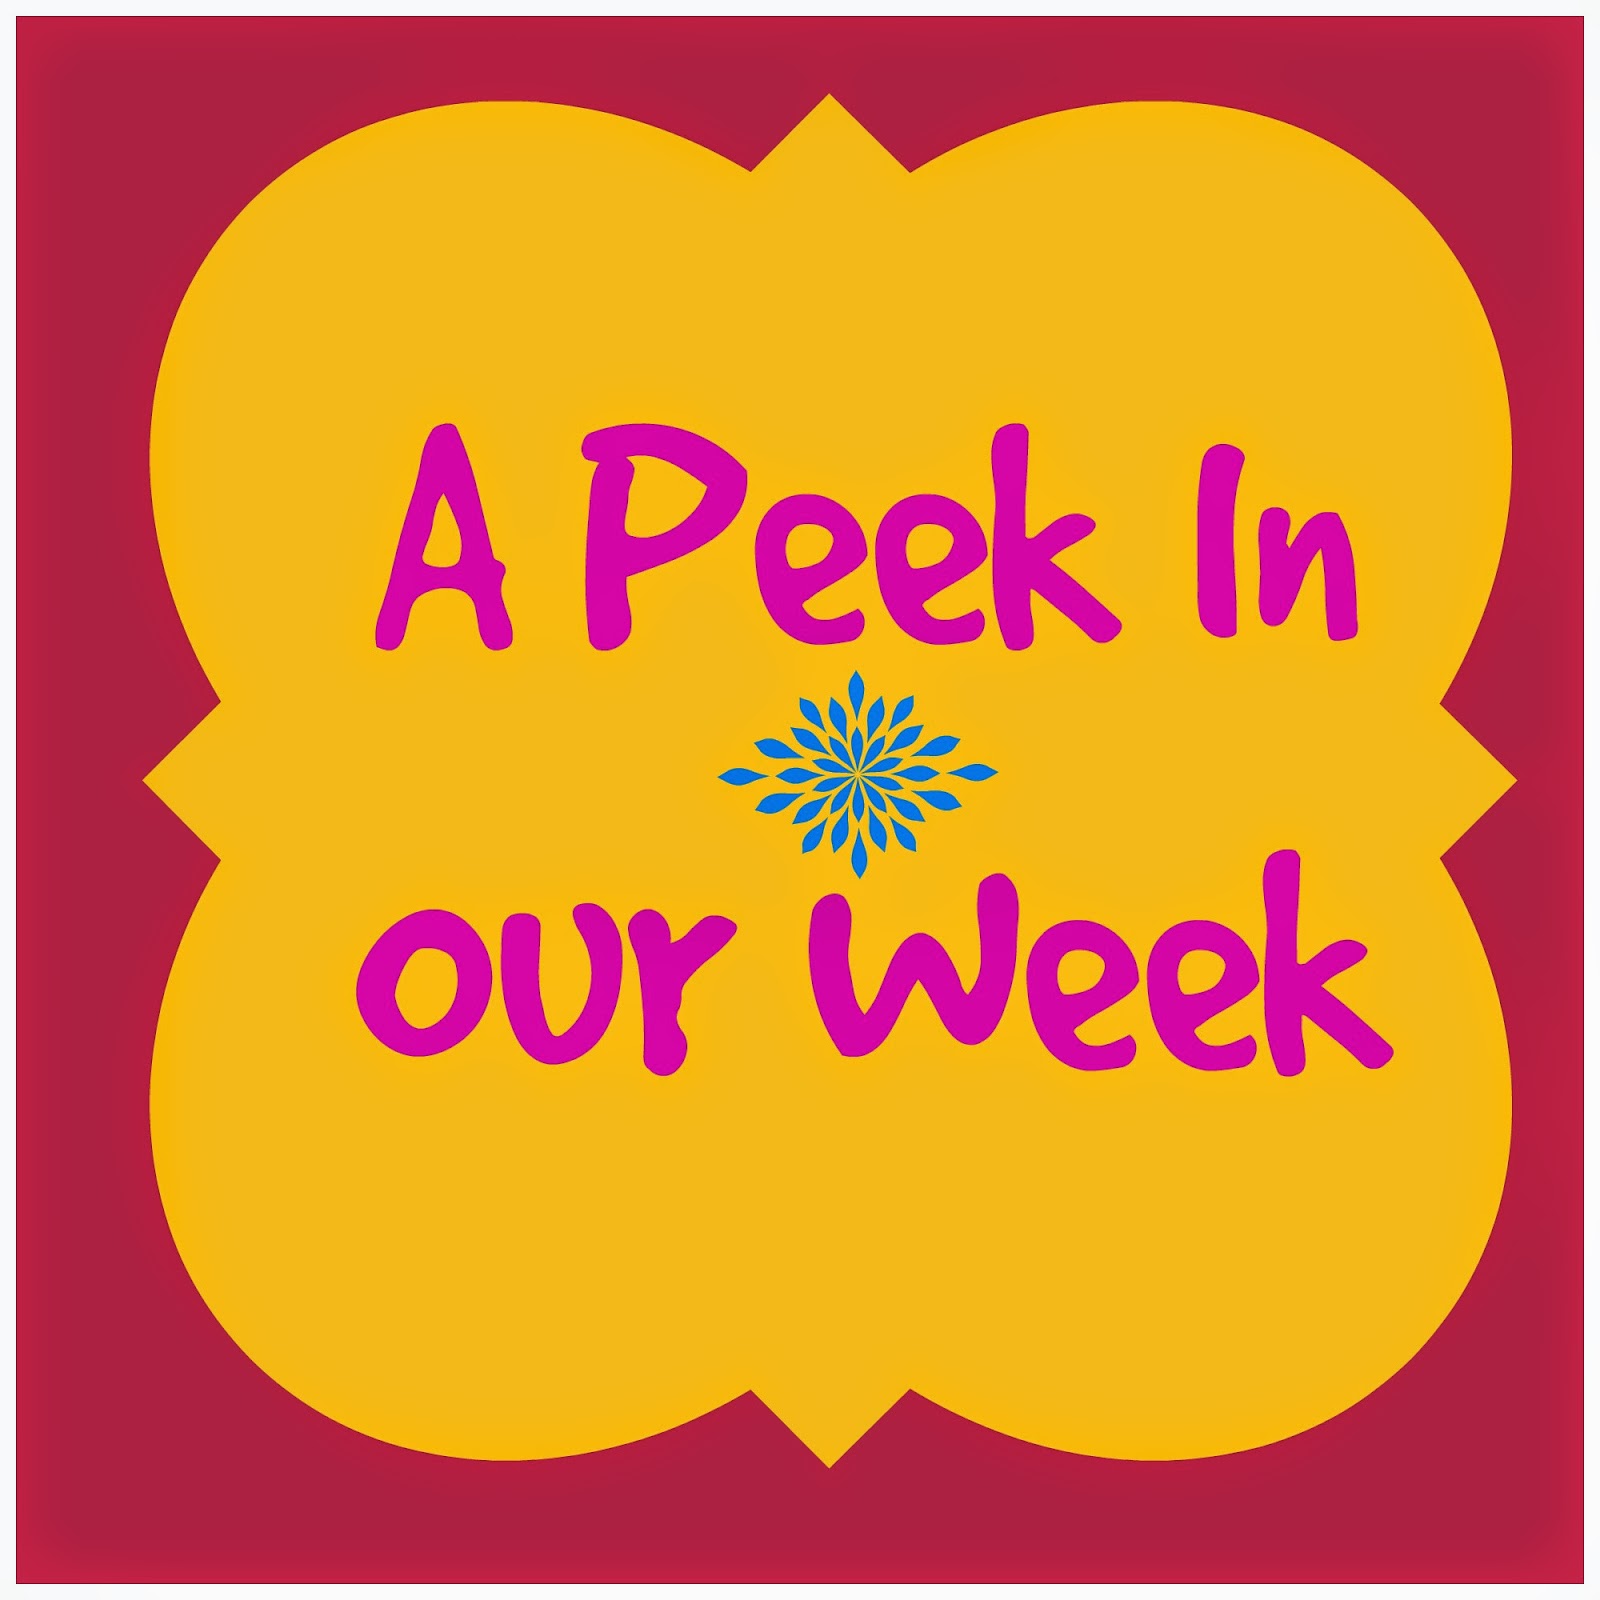 Peek At The Week